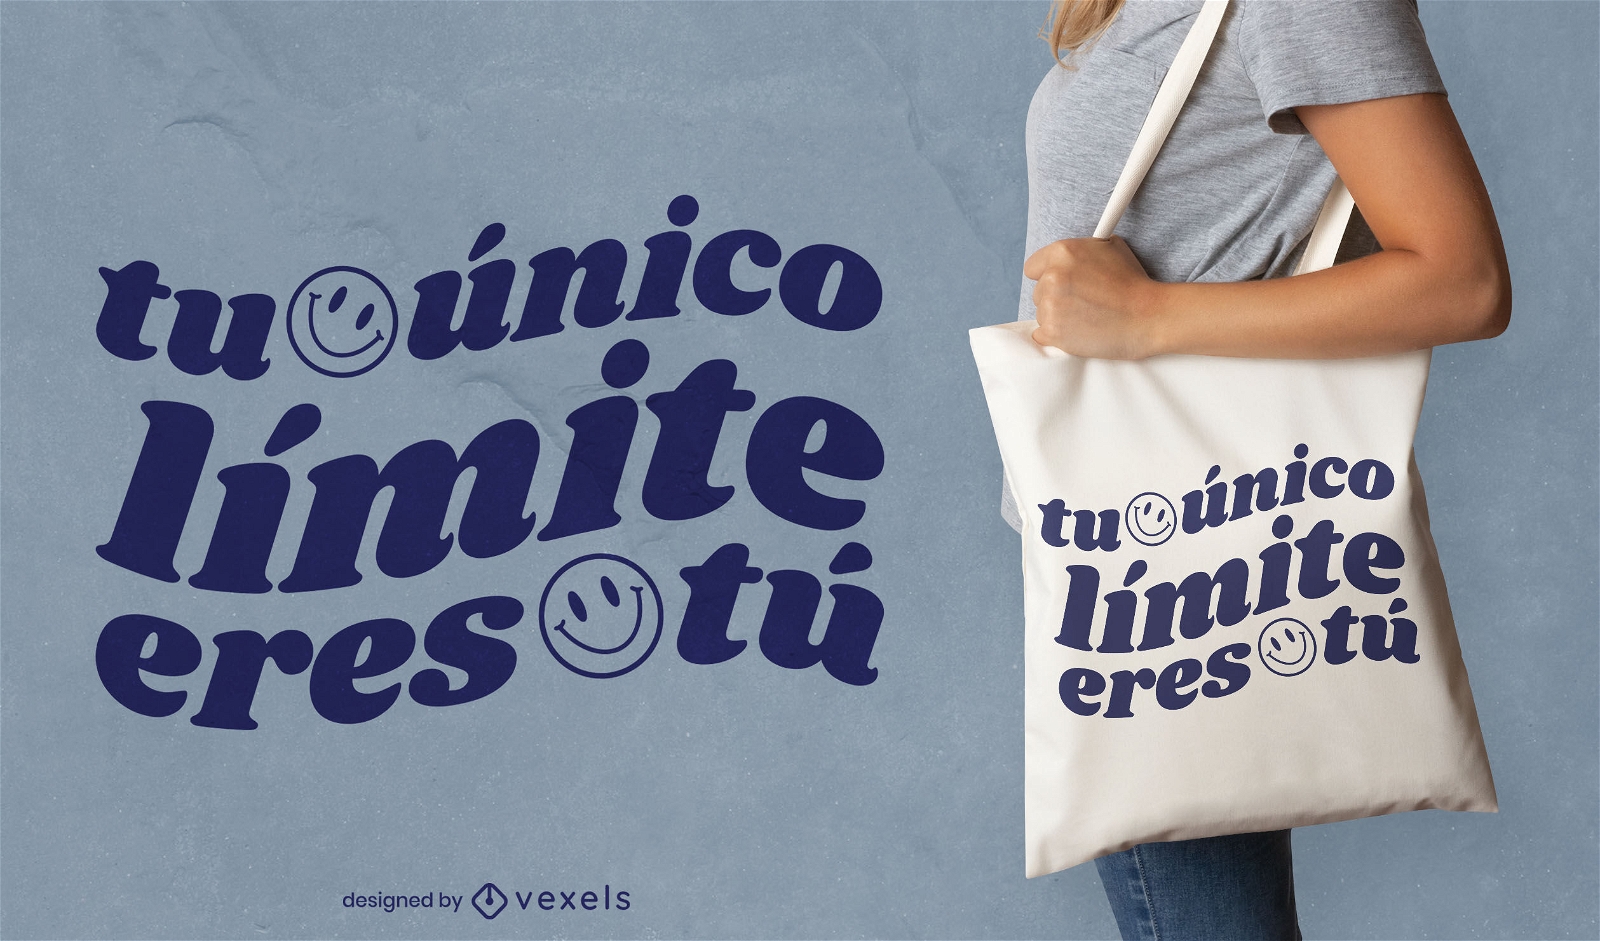 Design de sacola com citação em espanhol de rosto sorridente